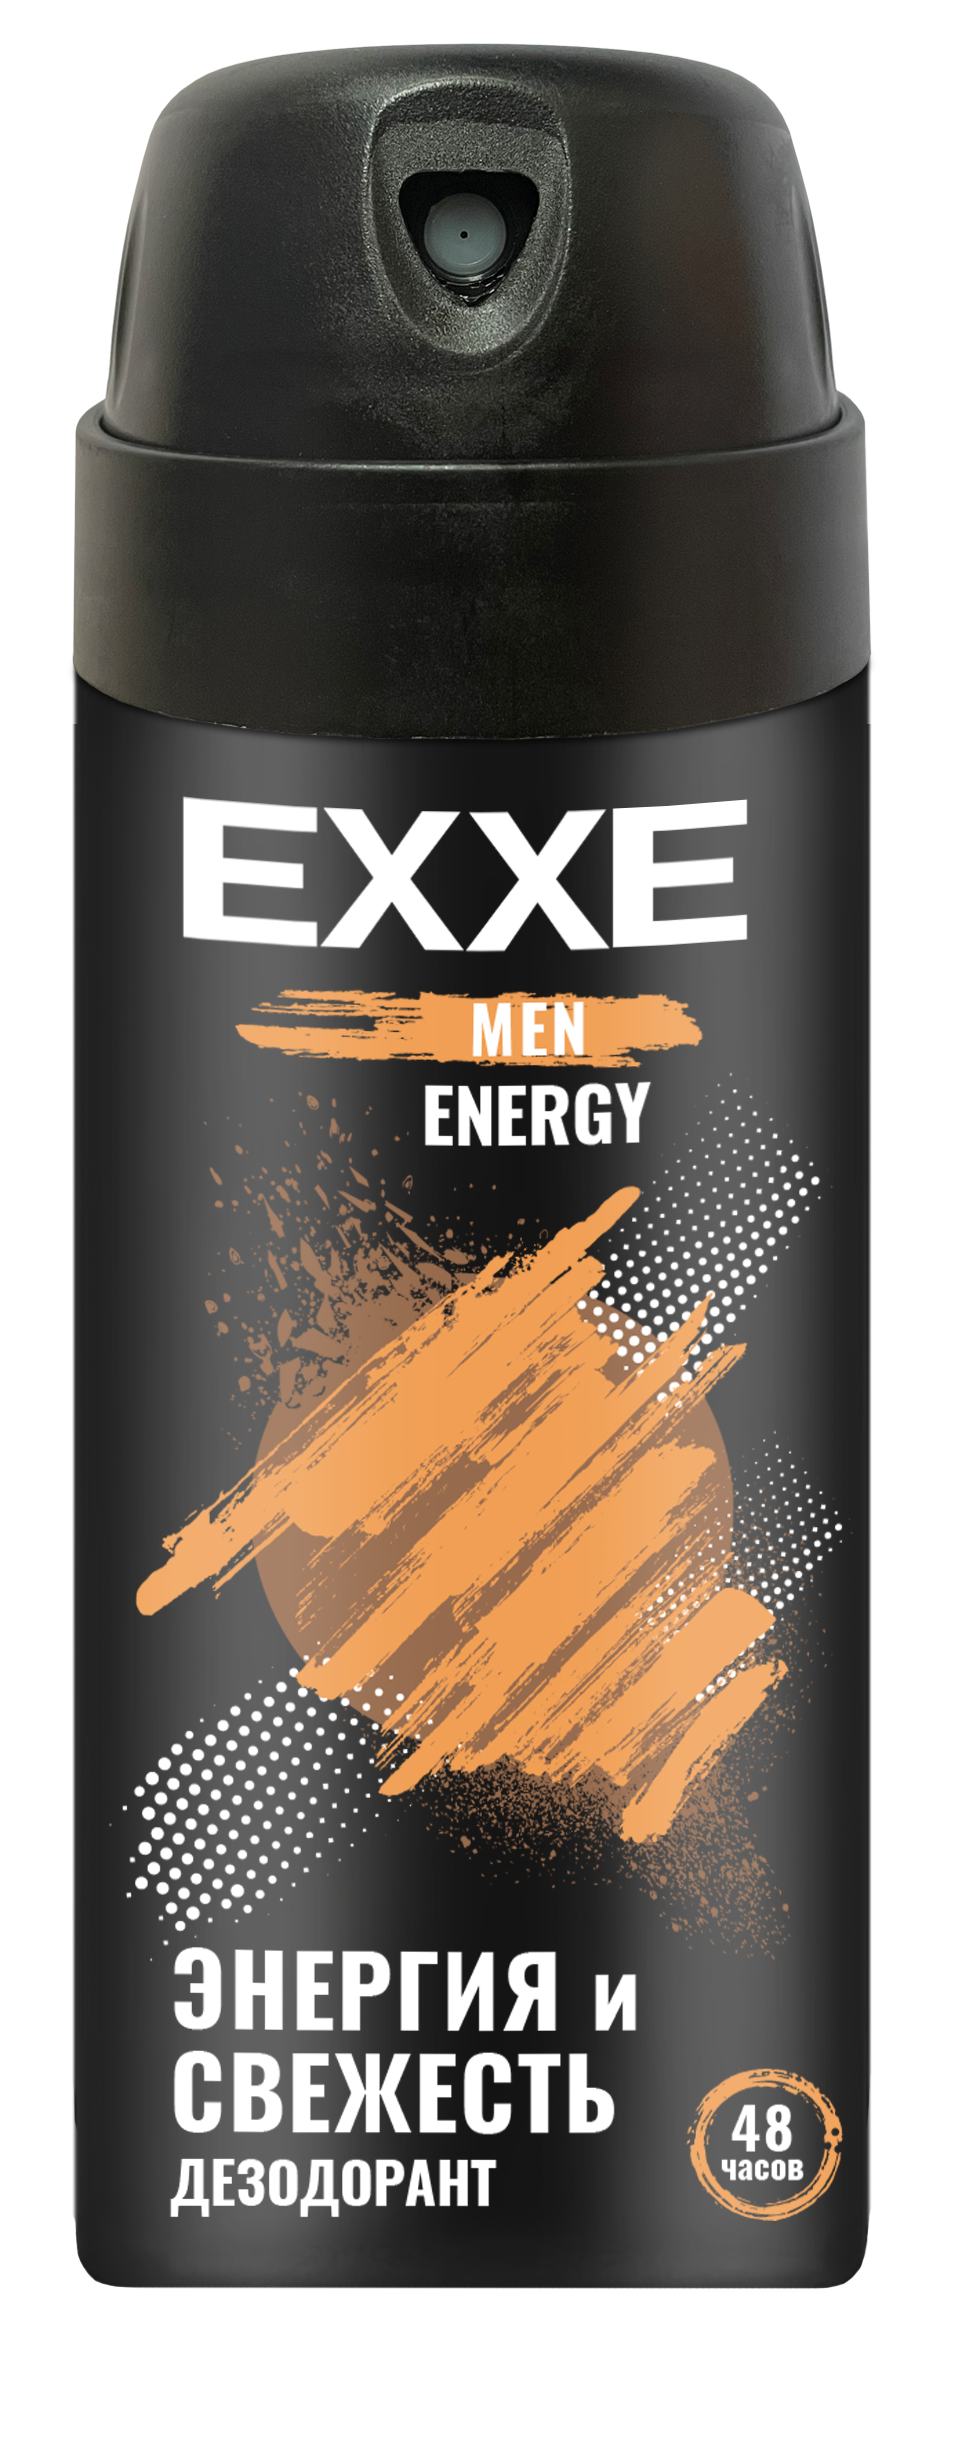 Мужской дезодорант EXXE MEN ENERGY, аэрозоль, 150 мл fawaris дезодорант спрей мужской football 150